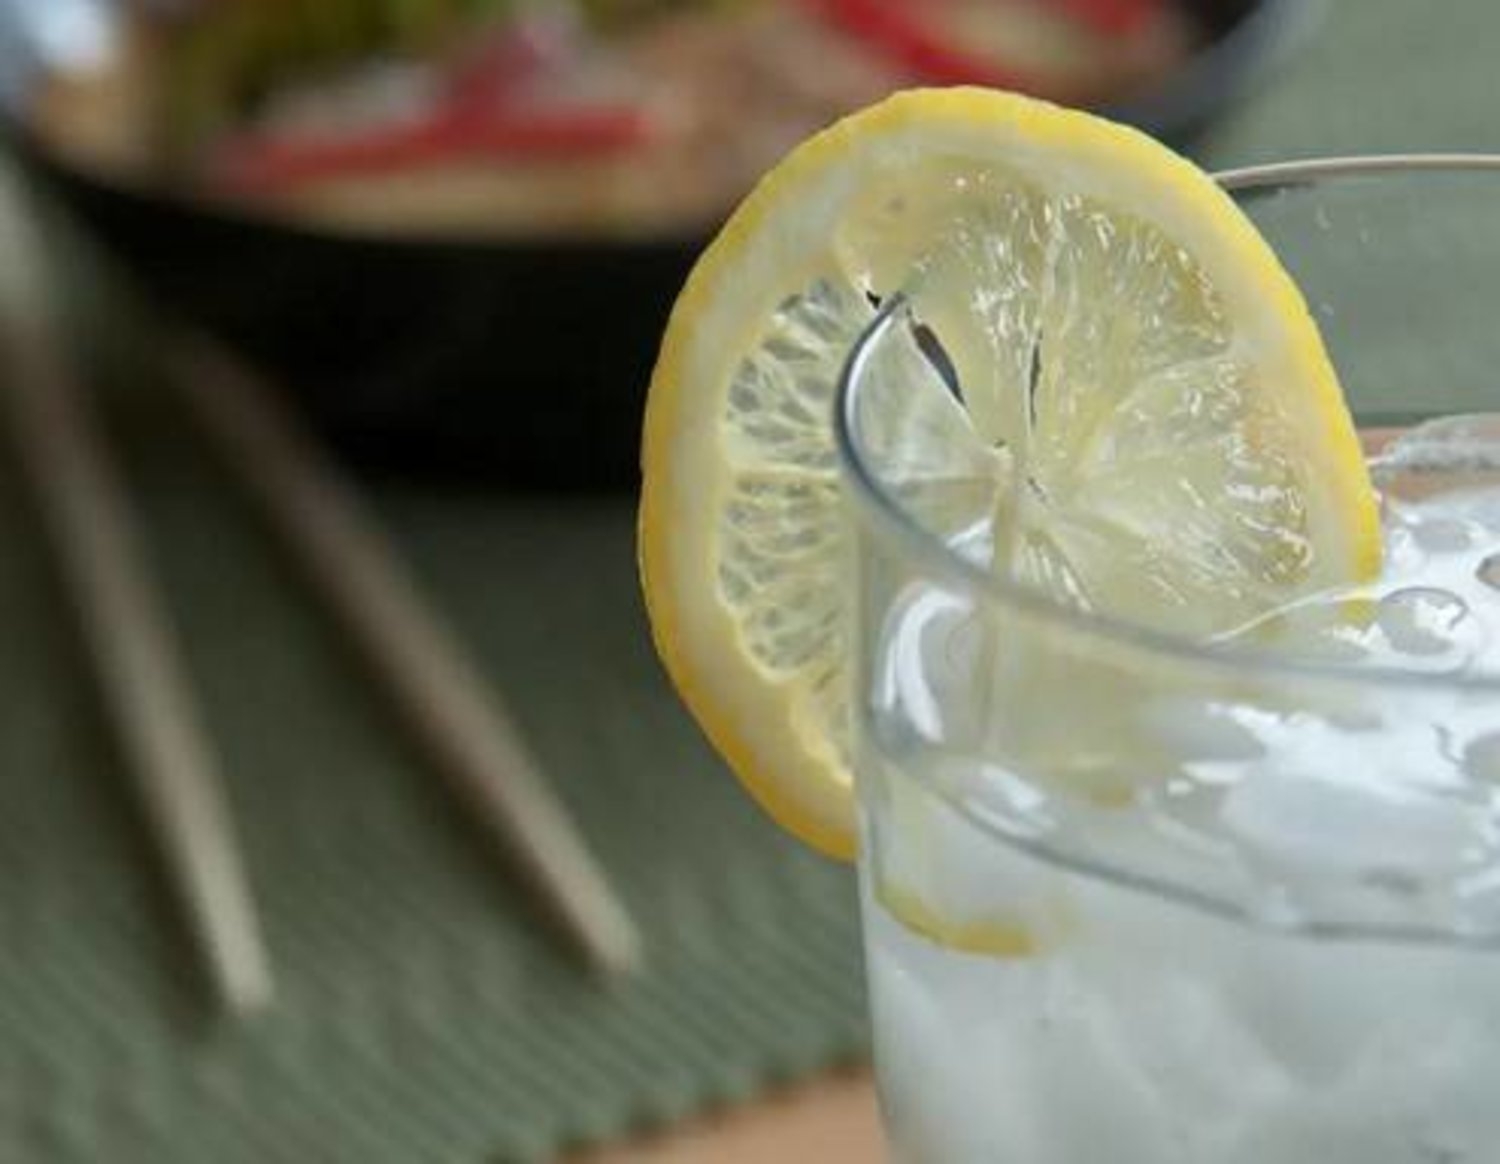 حقيقة فوائد شرب ماء الليمون في الصباح؟